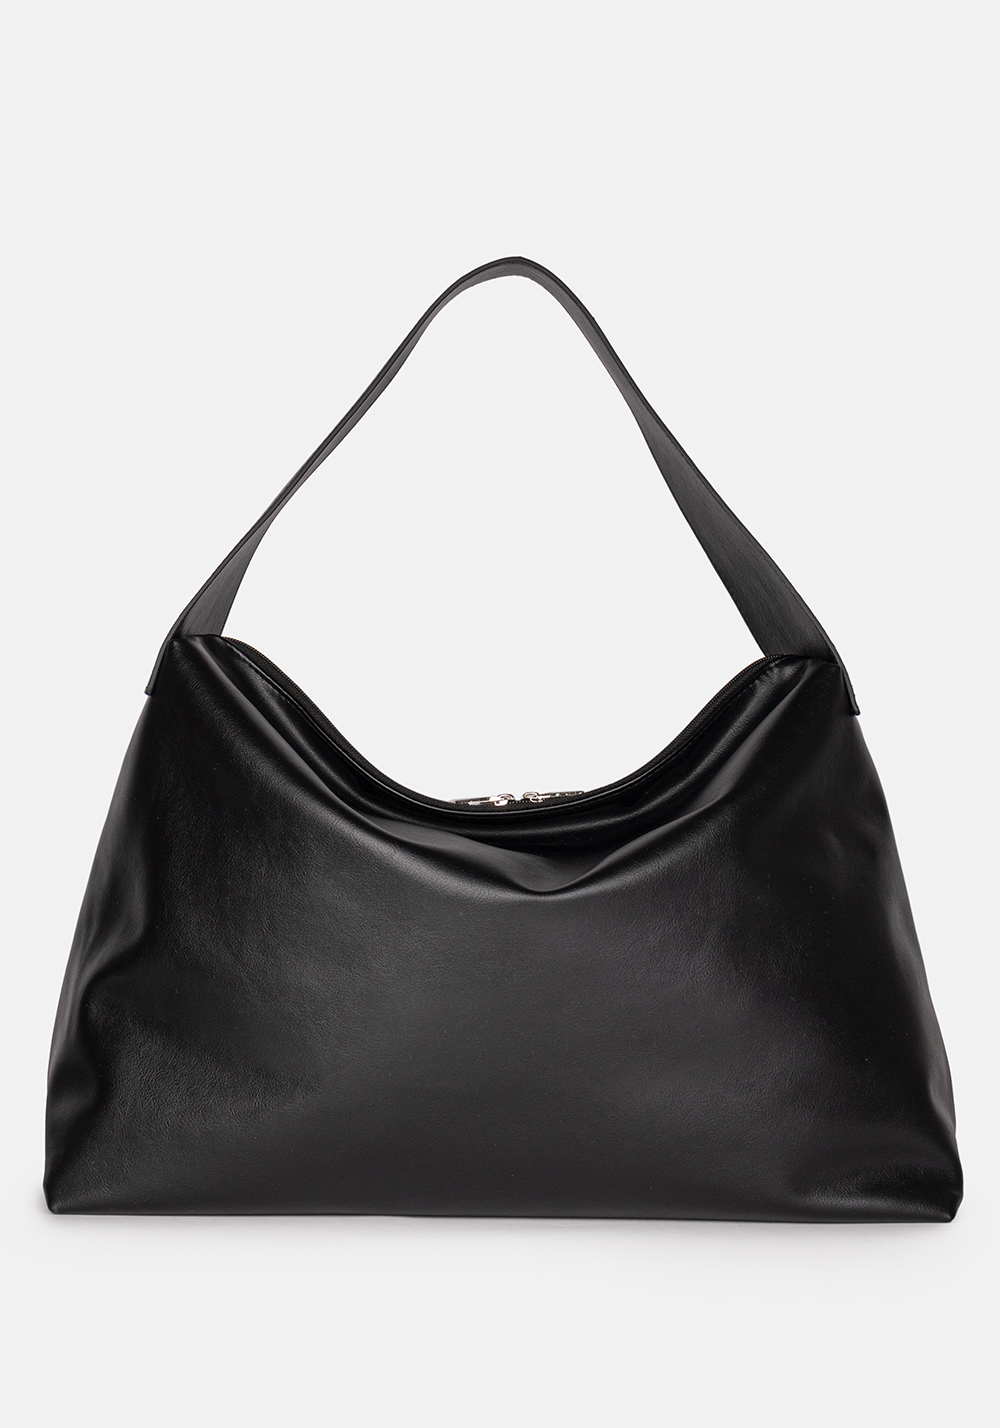 Женская сумка L-craft модель №1545 | кожзам | гладкий | цвет черный | Р924-1 | арт. 32446 - купить от производителя оптом и в розницу